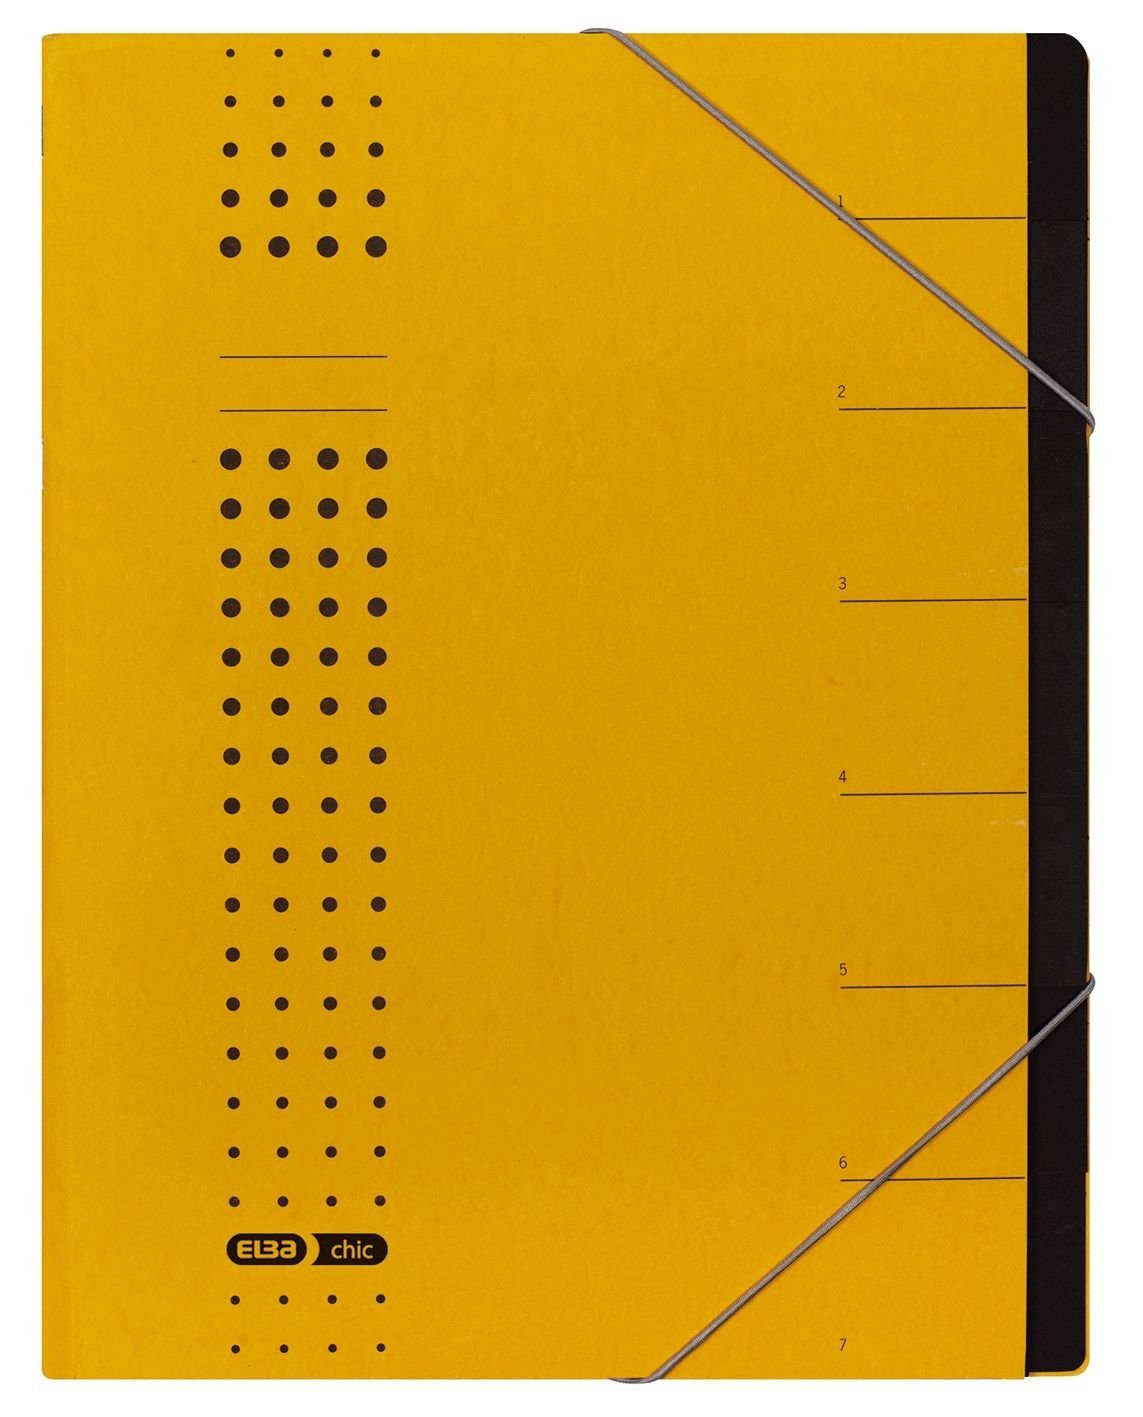 ELBA Schreibmappe ELBA chic-Ordnungsmappe, A4 gelb, Fächer 1-7, Karton